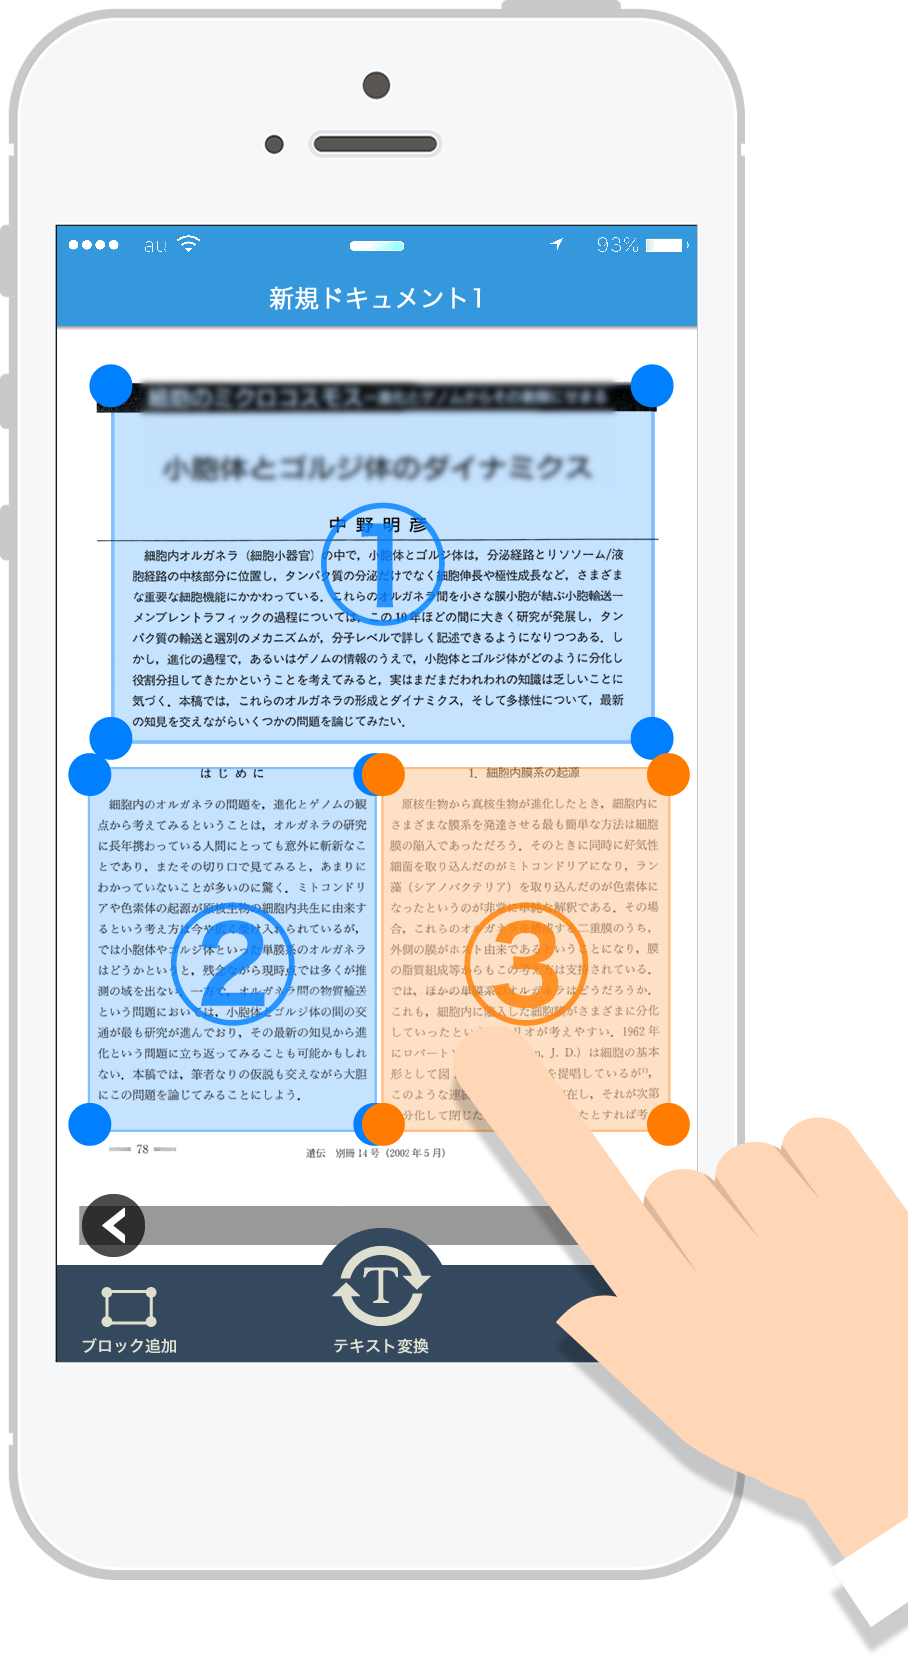 ブロック追加 レイアウトに合わせて、ブロックを追加します。 右記のような文書の場合には、３つのブロックの位置を合わせて日本語OCR処理をします。